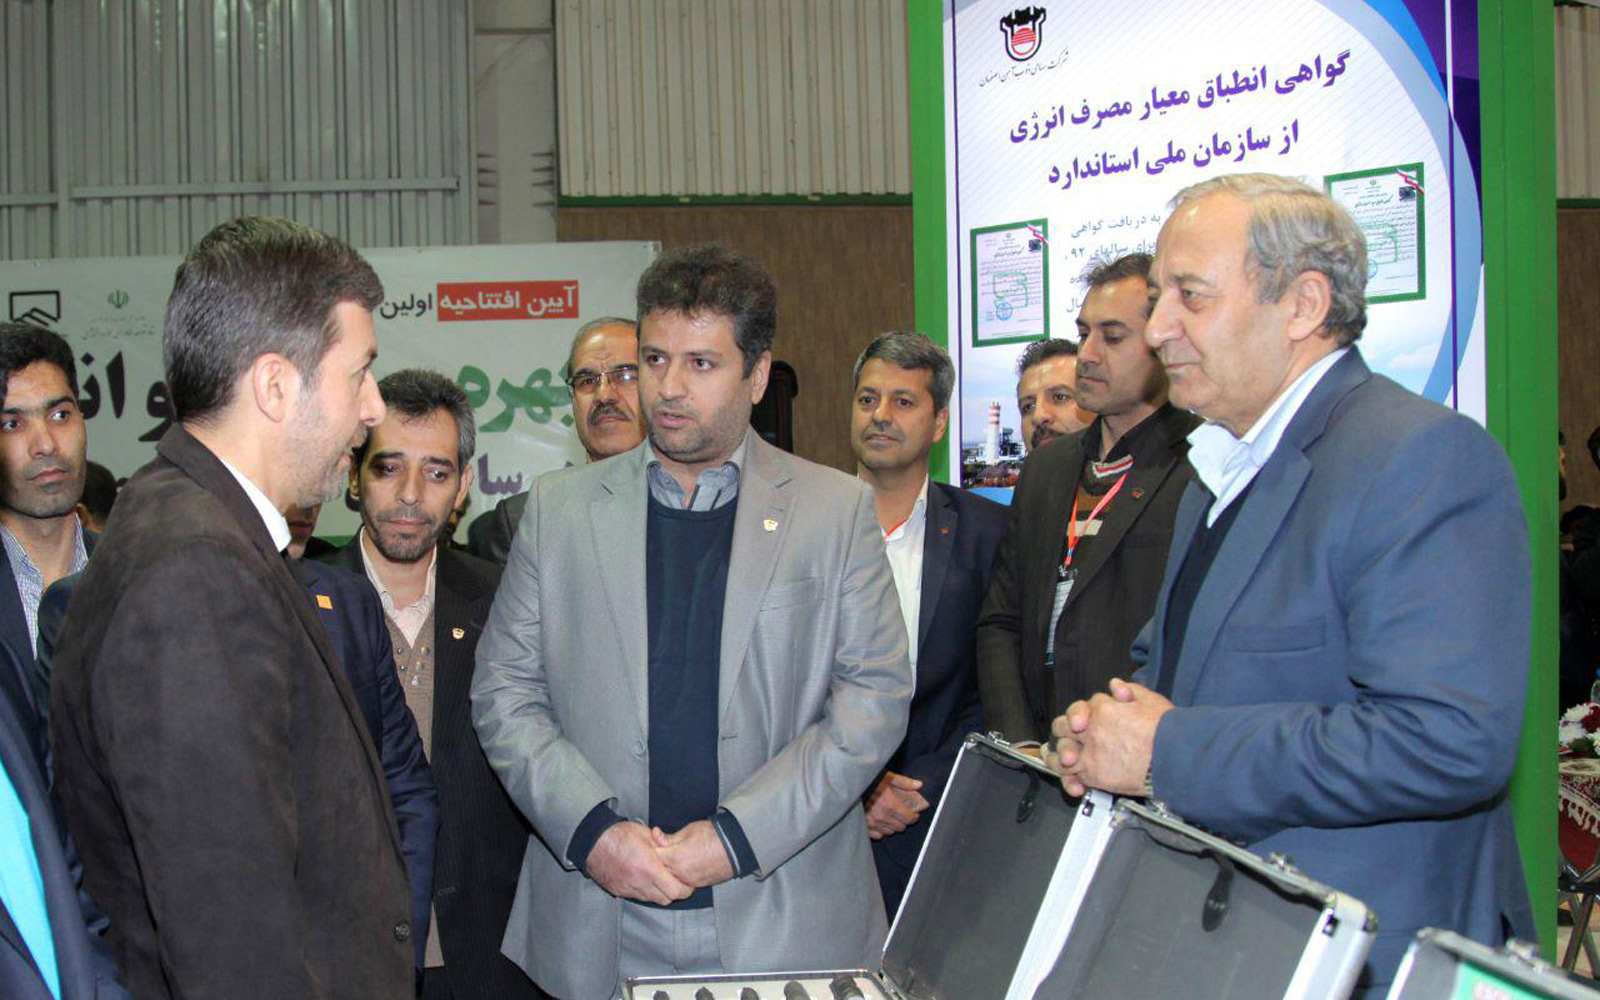 حضور فعال ذوب آهن اصفهان در نمایشگاه بهره وری انرژی و آب